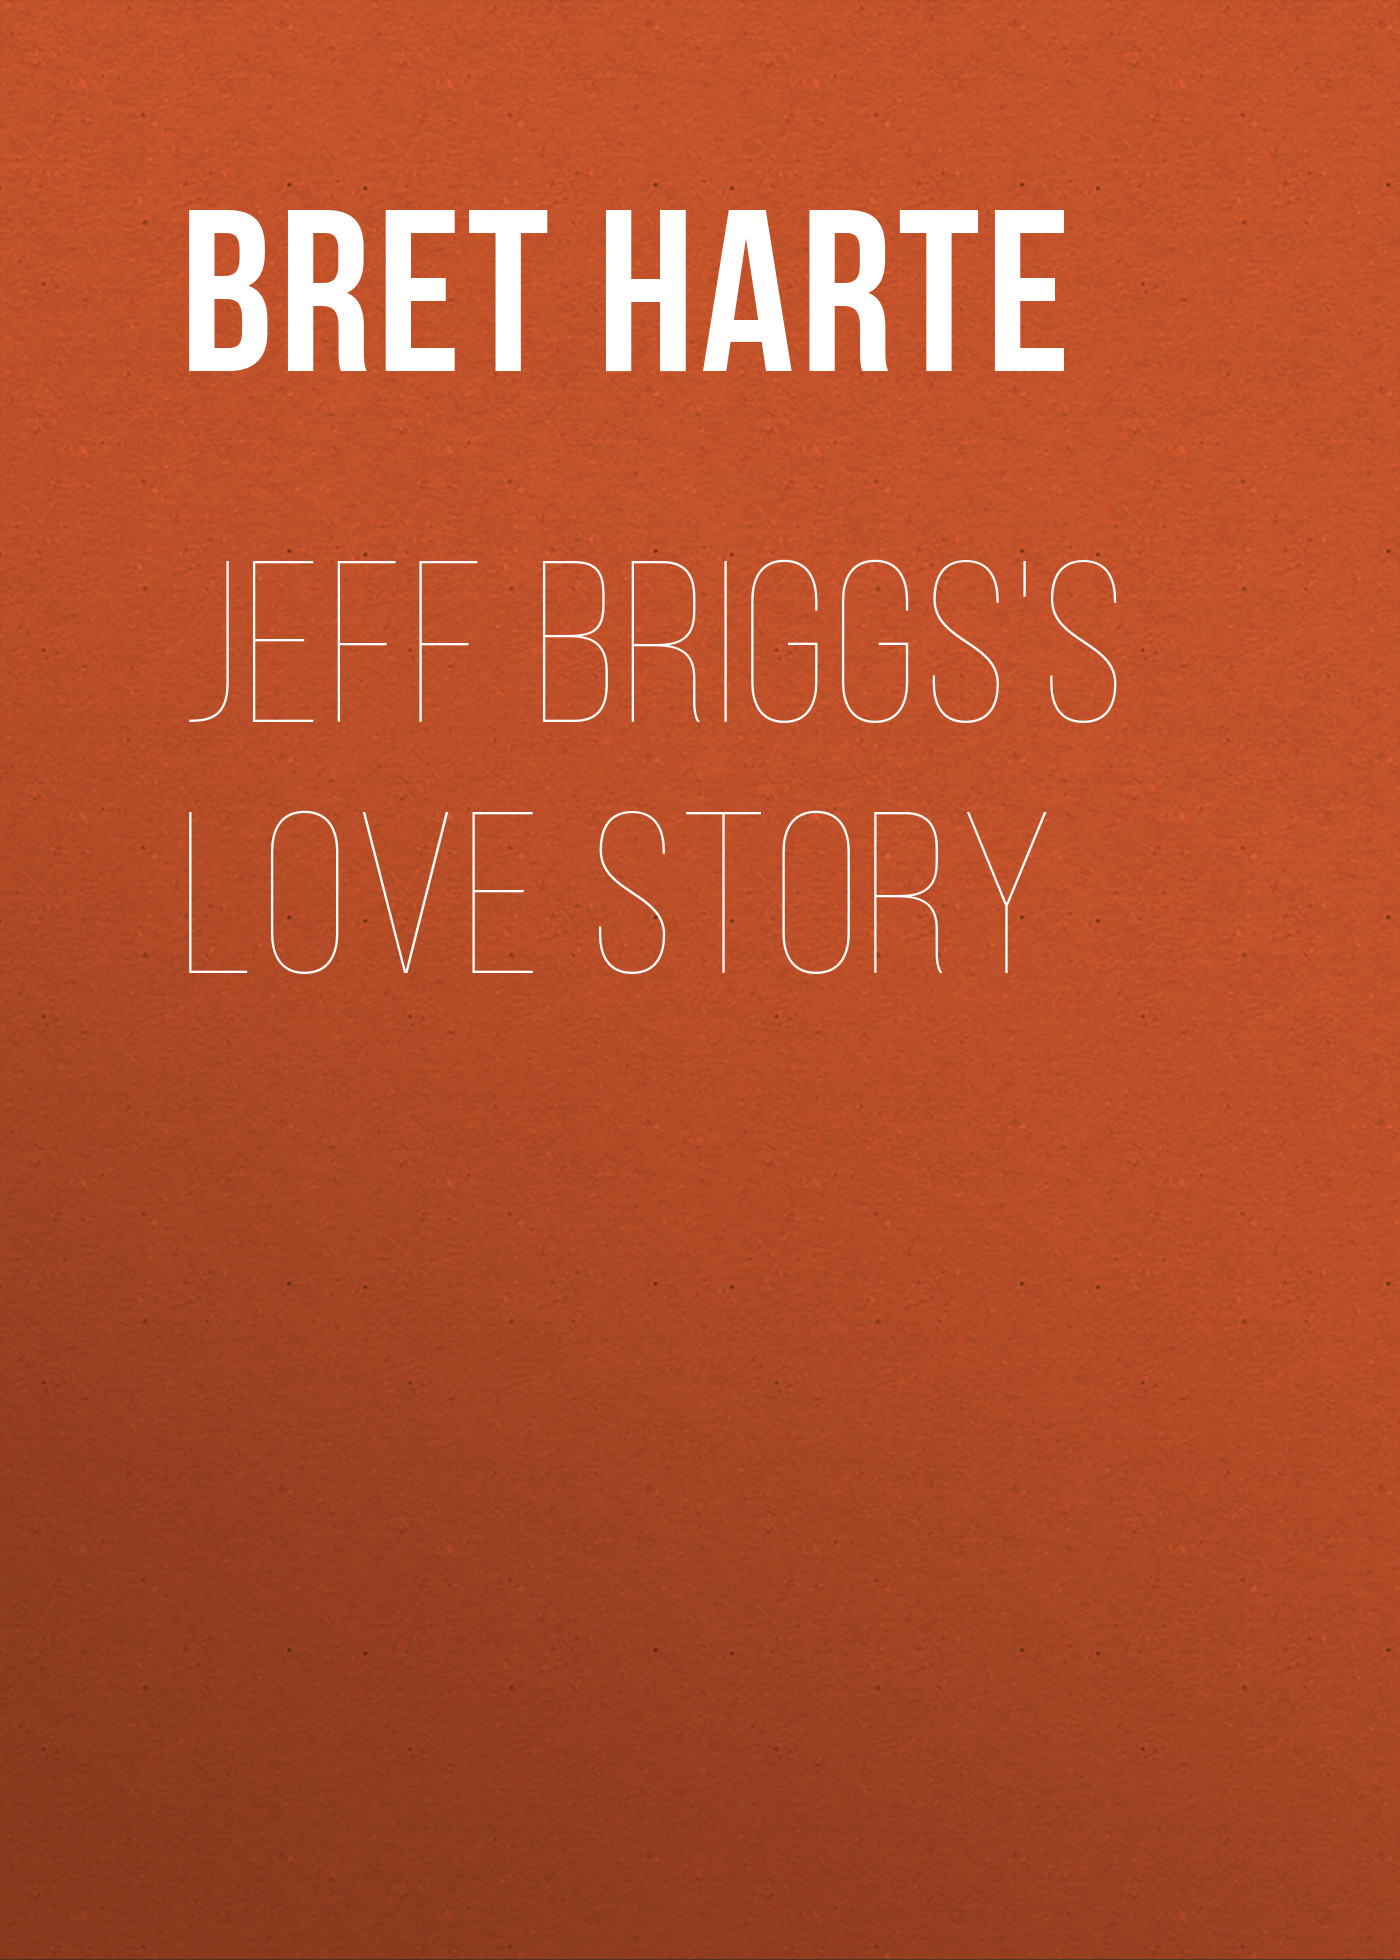 Книга Jeff Briggs's Love Story из серии , созданная Bret Harte, может относится к жанру Зарубежная фантастика, Литература 19 века, Зарубежная старинная литература, Зарубежная классика. Стоимость электронной книги Jeff Briggs's Love Story с идентификатором 36322244 составляет 0 руб.